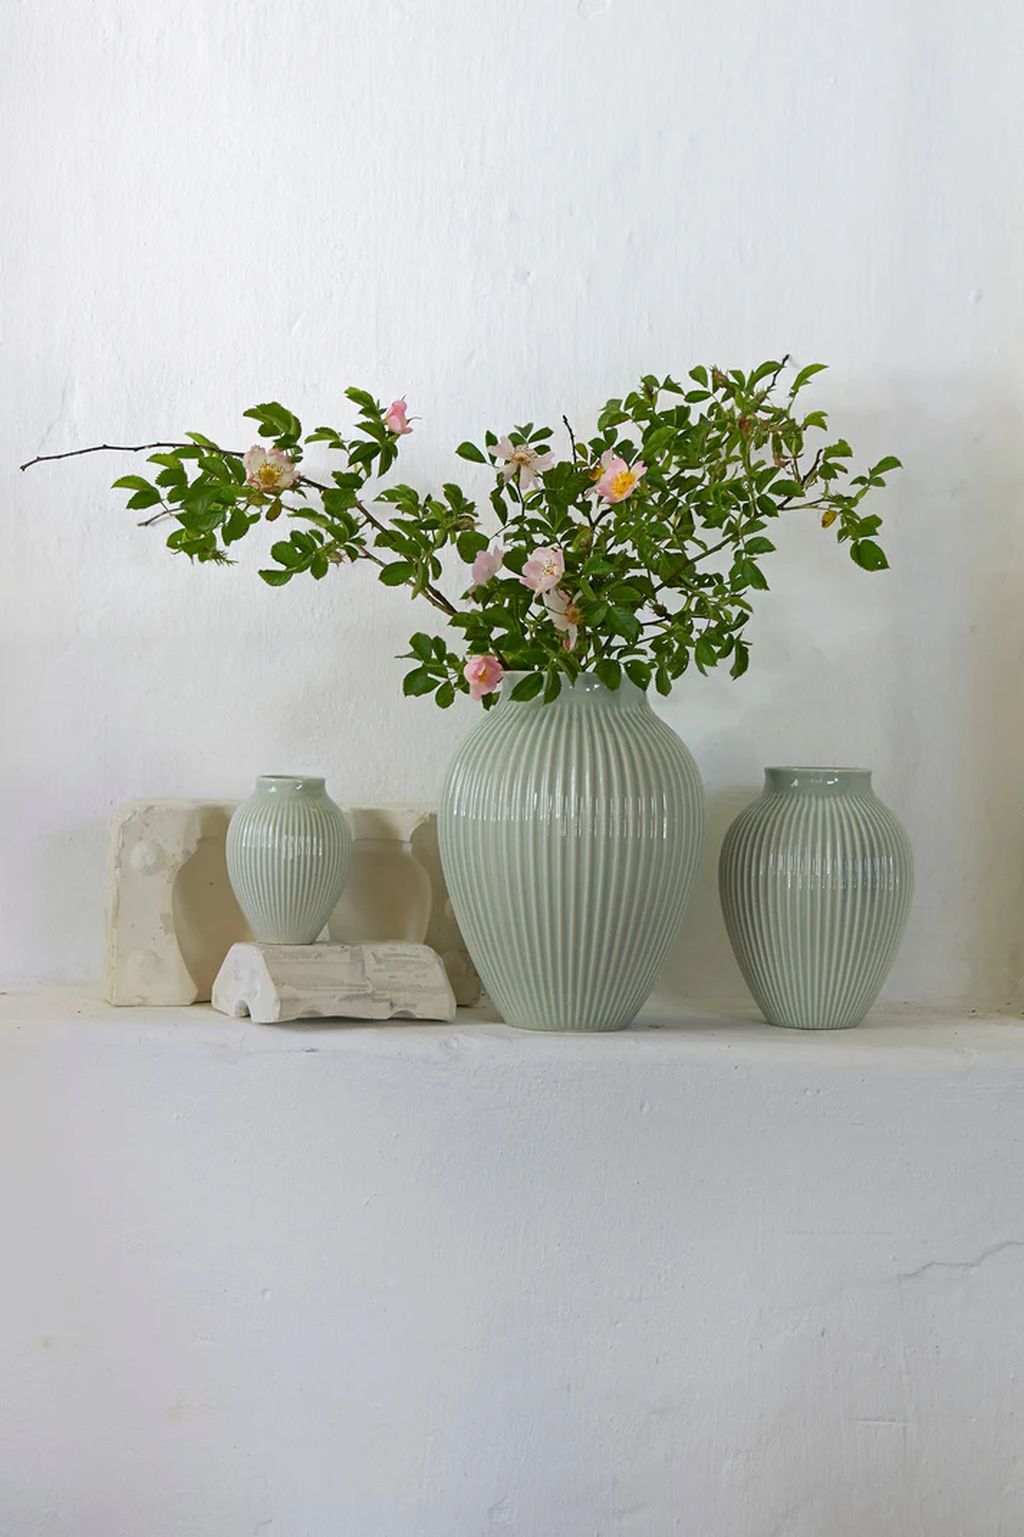 Knabstrup Keramik Vase mit Grooves H 20 cm, Minzgrün